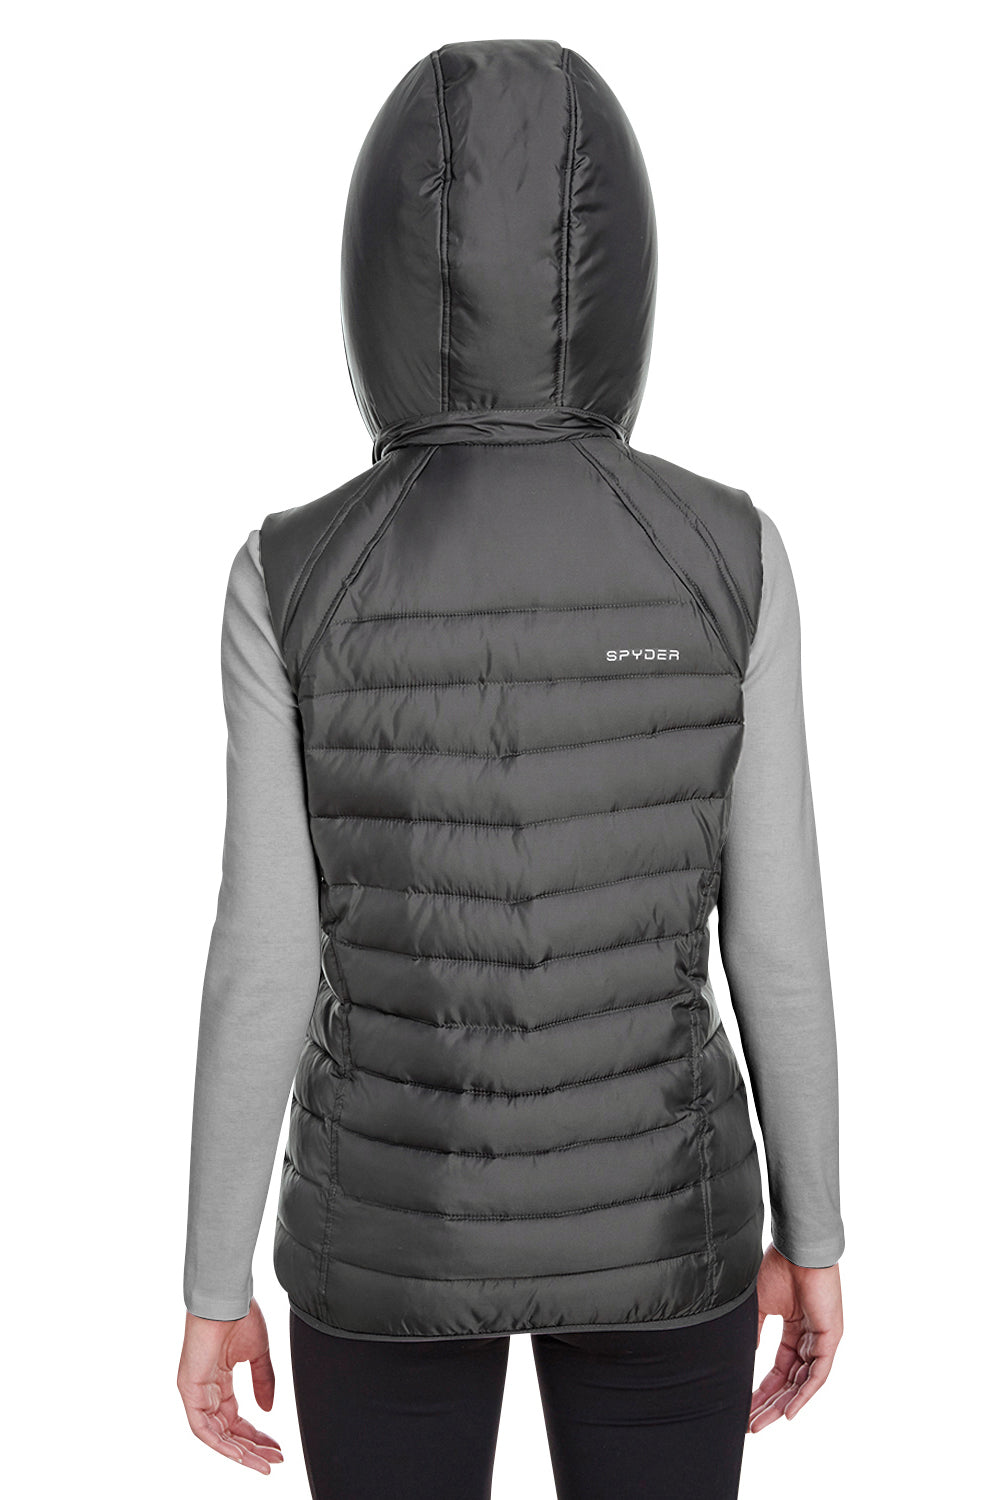 Spyder S16641 Womens Supreme Full Zip Hooded Puffer Vest Grey Back